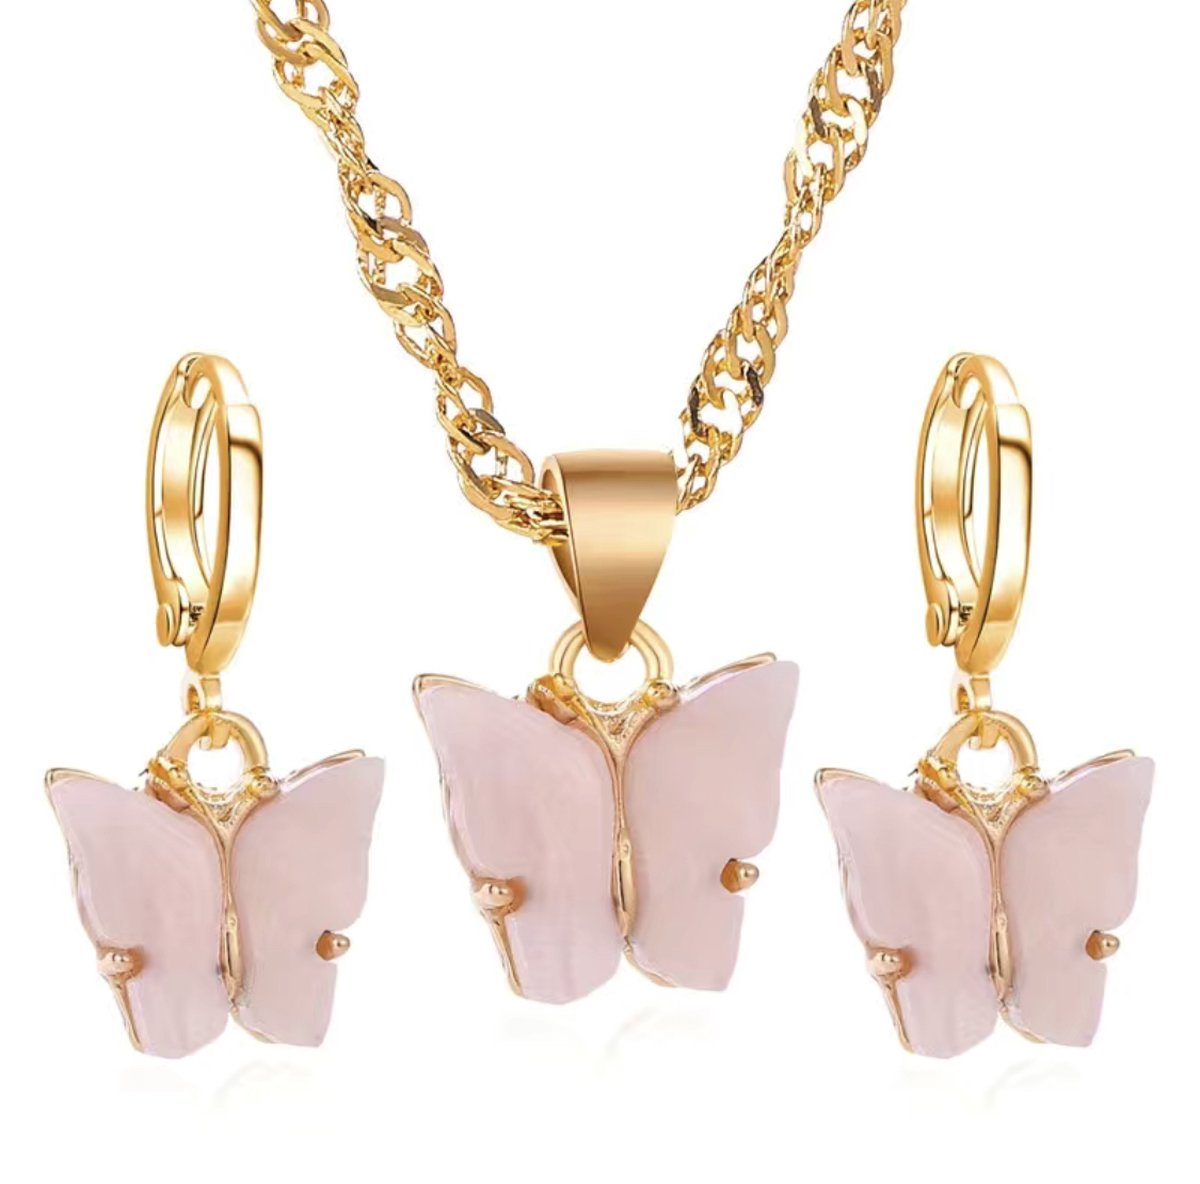 Beads by Chantal - vlinder oorbellen & vlinder ketting - roze - ring oorbellen - vlinder acryl